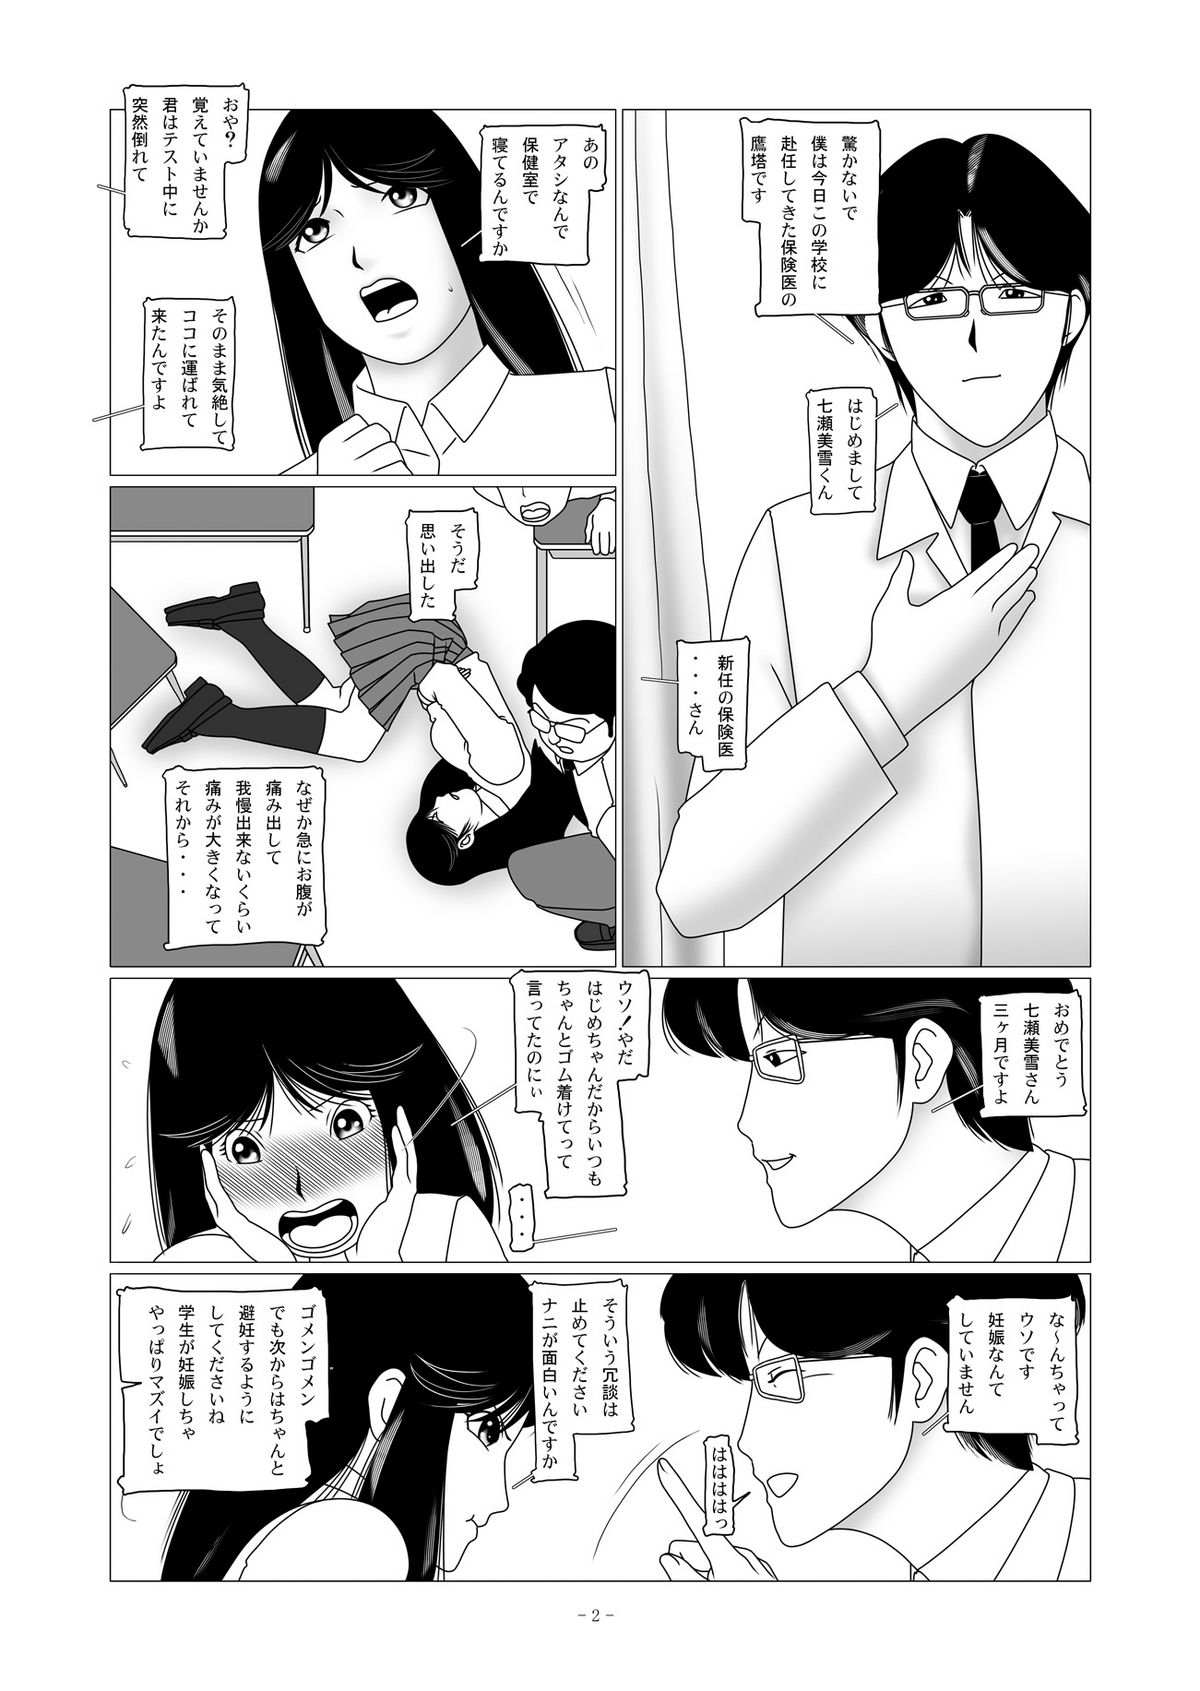 [nebira71] Nanase Miyuki no Choukyoubo File 02 - Koumon Kakuchou Dappun Hen (Kindaichi Shounen no Jikenbo) page 11 full